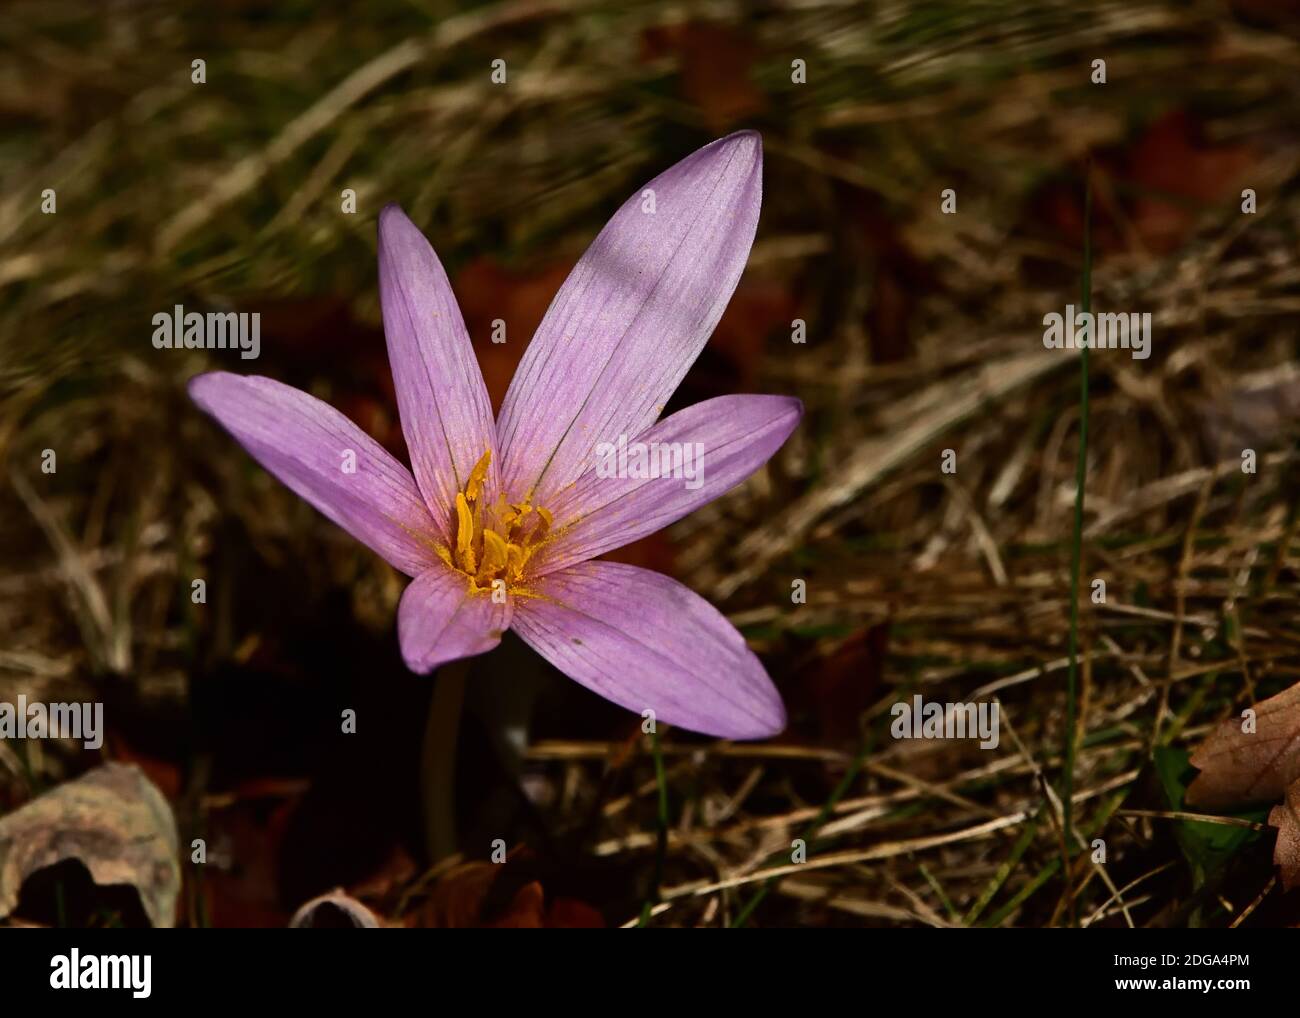 Isoliertes Exemplar der Colchicum autumnale Blume, einer giftigen Blume, die im Unterholz geboren wird. Stockfoto